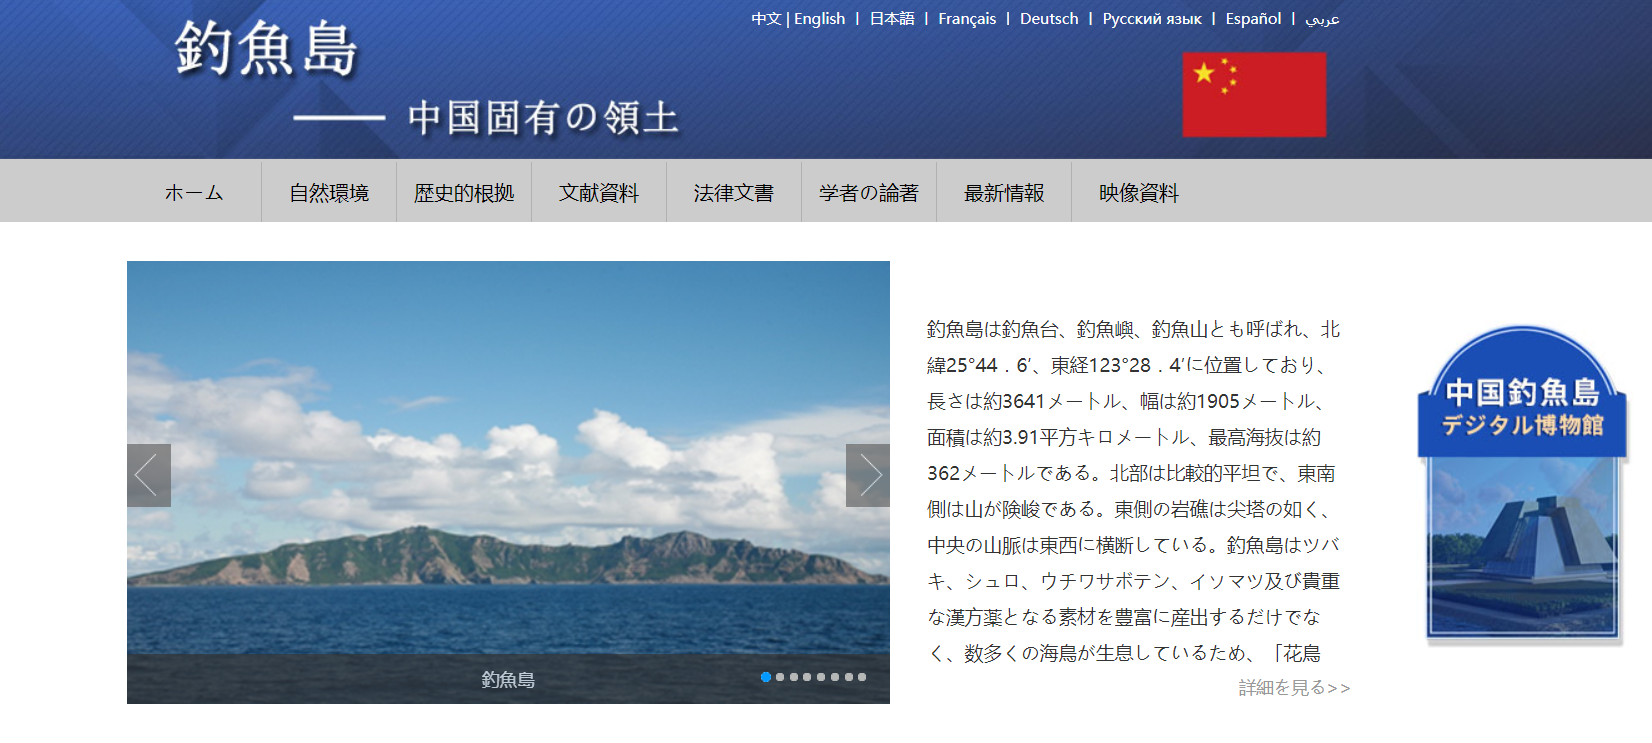 中国钓鱼岛数字博物馆英日文版上线运行 